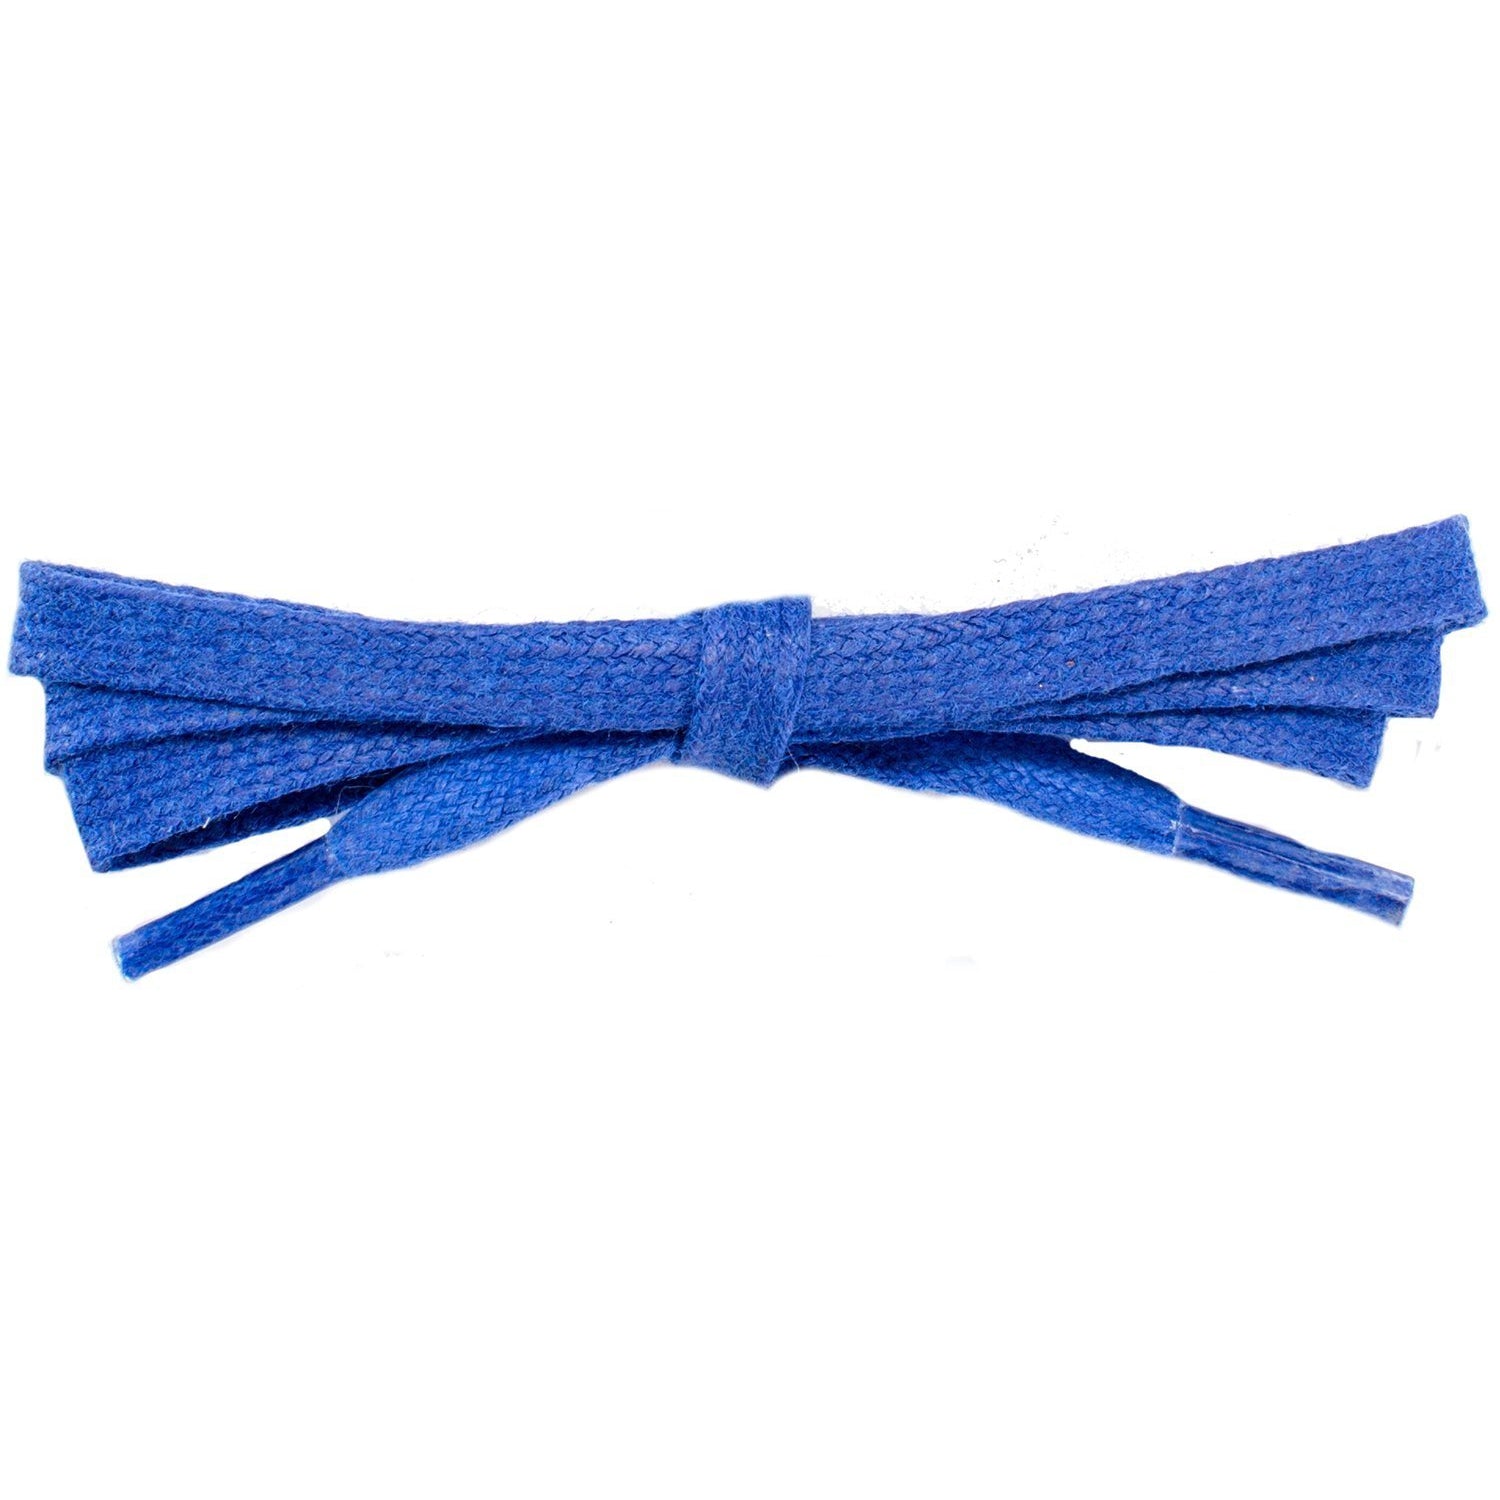 Wholesale Waxed Cotton Flat DRESS Laces 1/4'' - Royal Blue (12 Pair Pack) Shoelaces